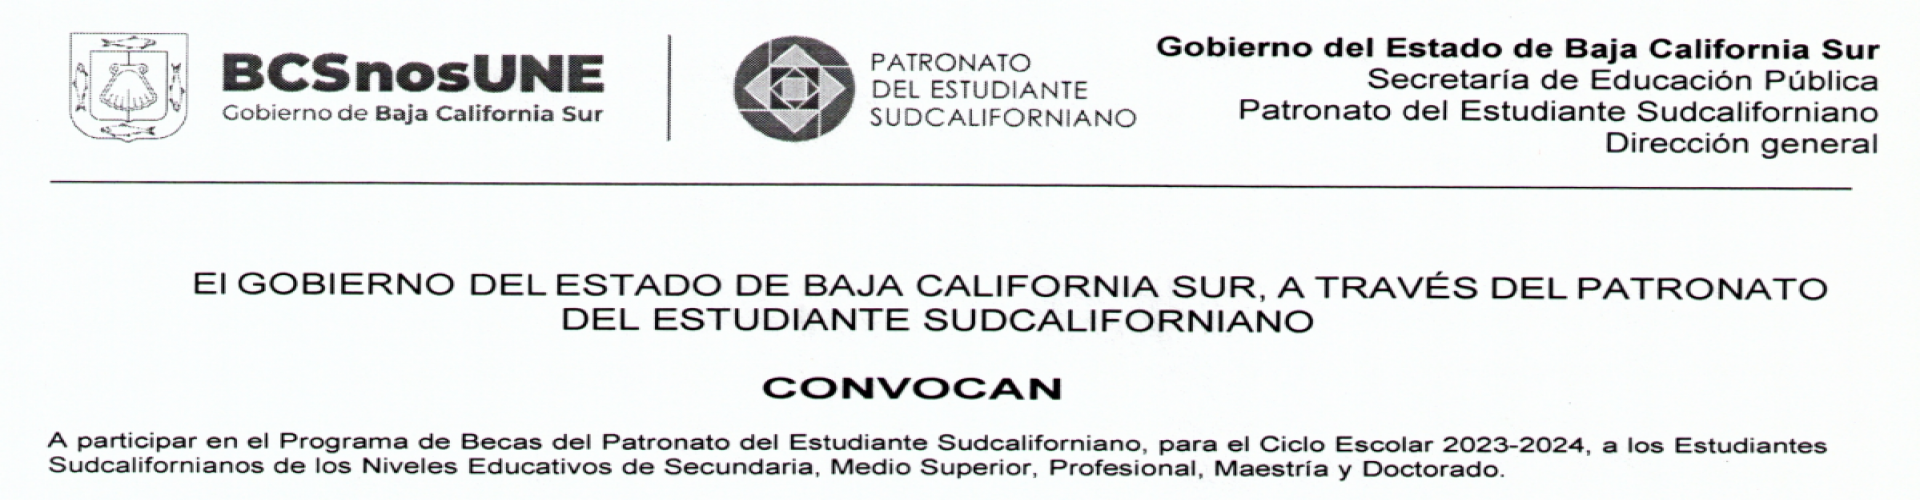 Convocatoria del Programa de Becas del Patronato del Estudiante Sudcaliforniano - Ciclo escolar 2023-2024 - SLIDE